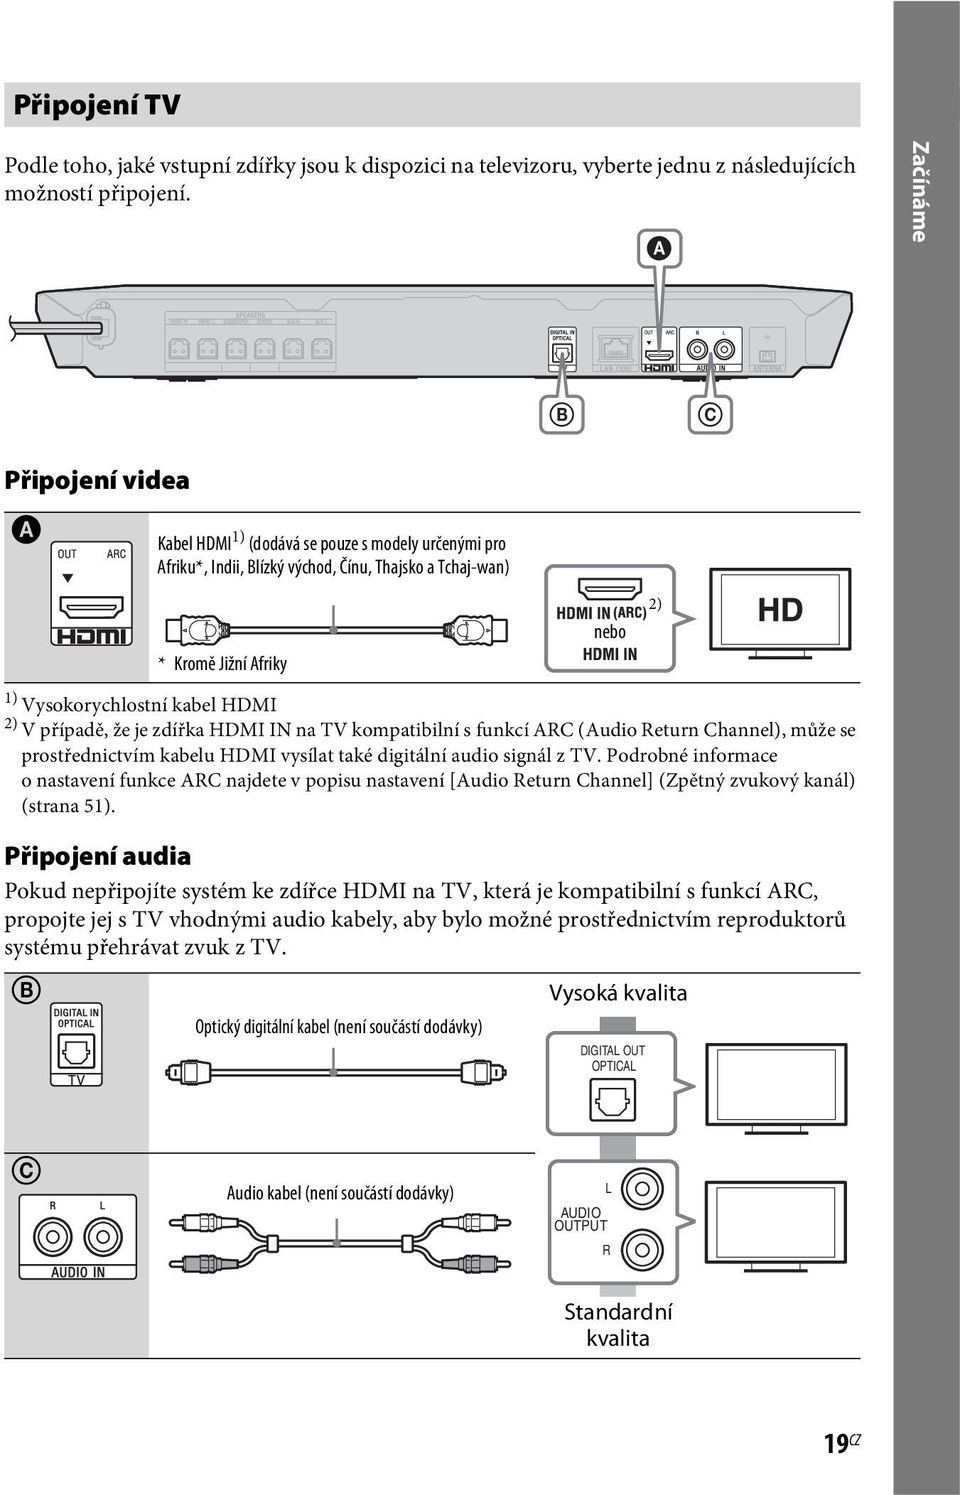 V případě, že je zdířka HDMI IN na TV kompatibilní s funkcí ARC (Audio Return Channel), může se prostřednictvím kabelu HDMI vysílat také digitální audio signál z TV.